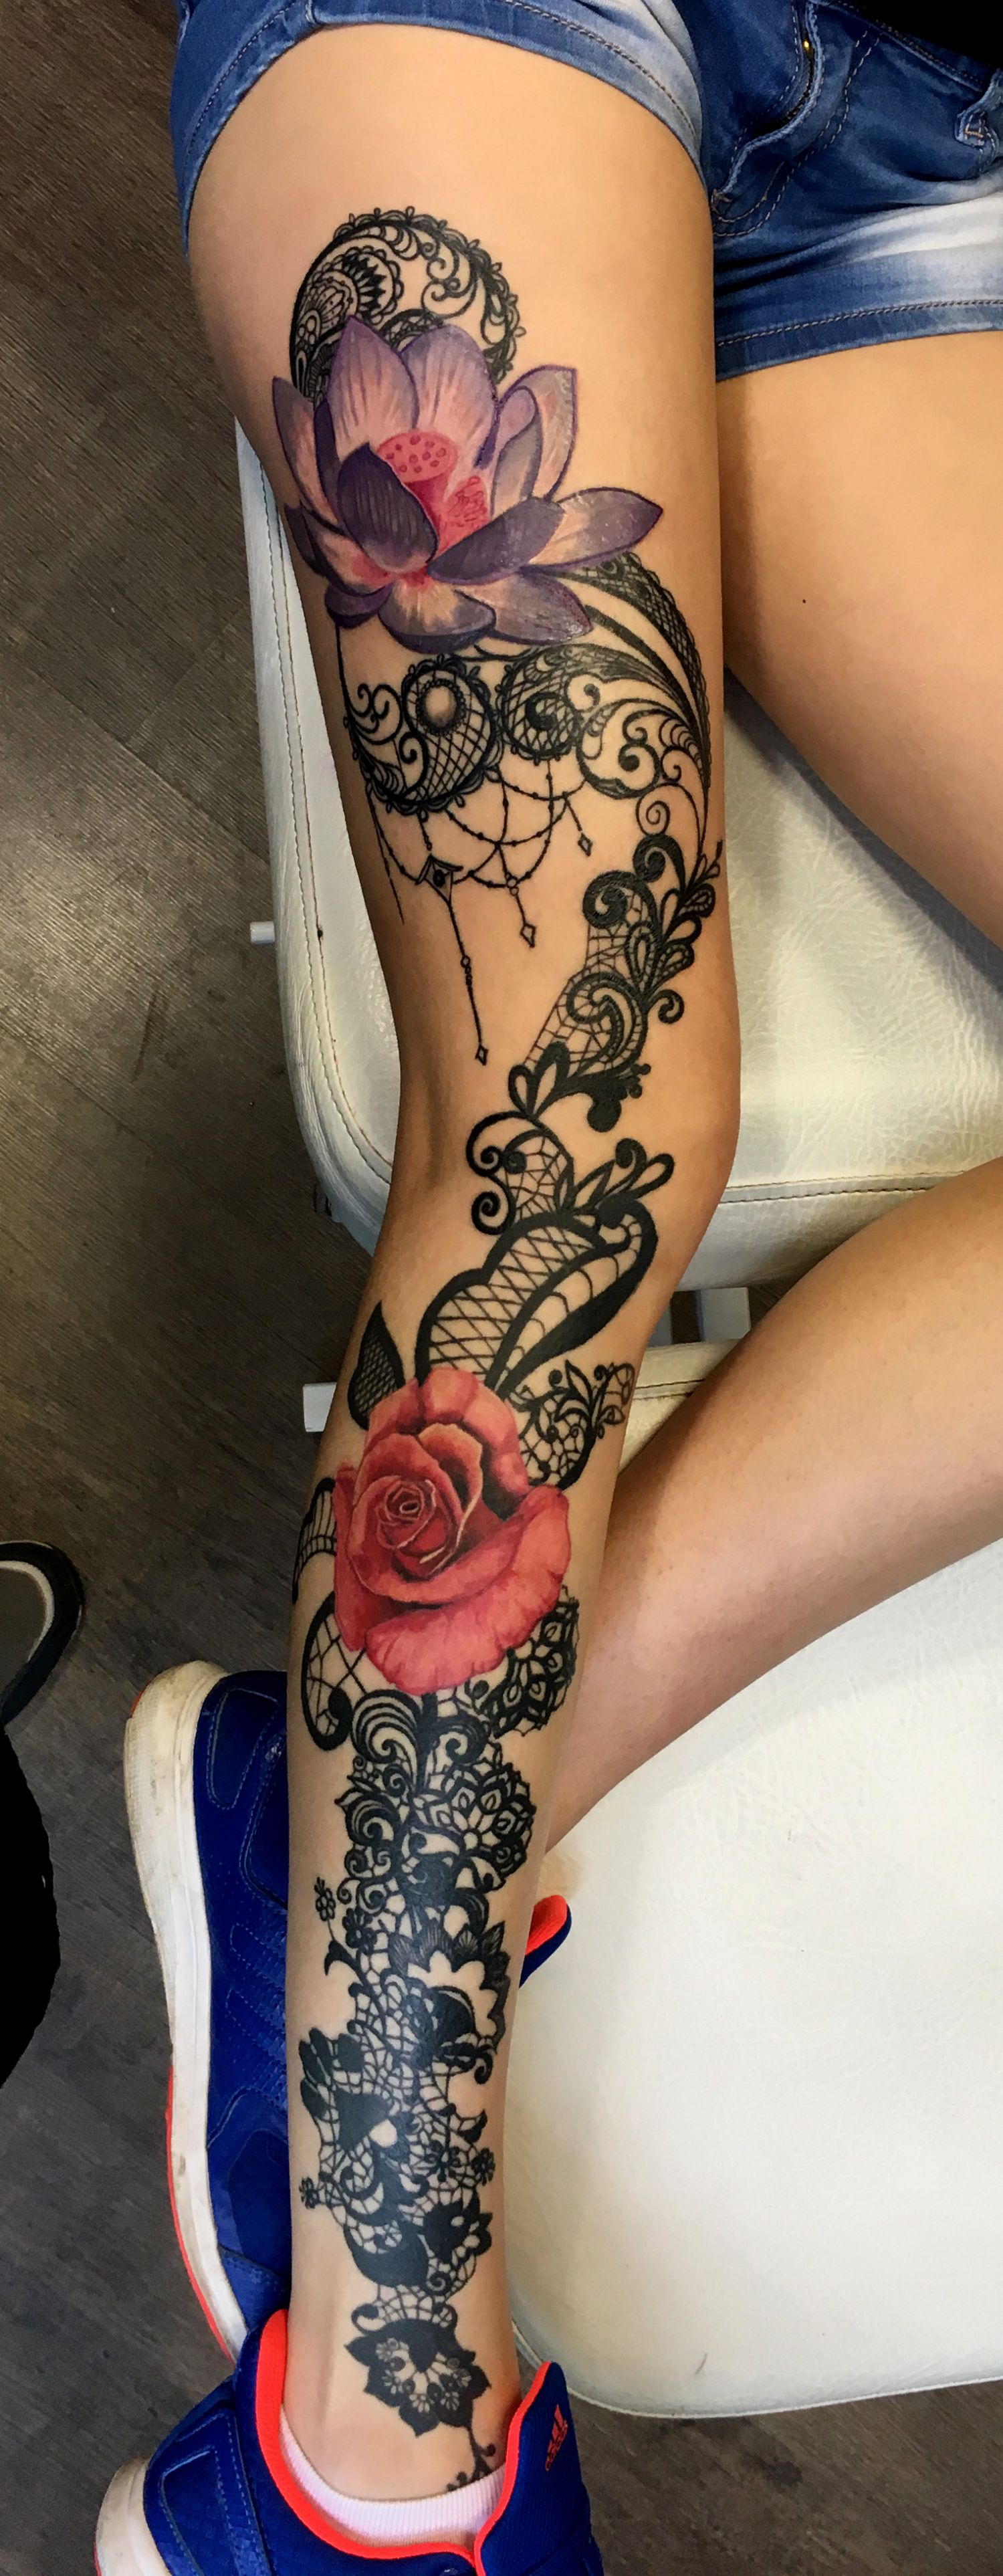 Comb tetoválás, Fantázia tetoválás, Vádli tetoválás, Virág tetoválás